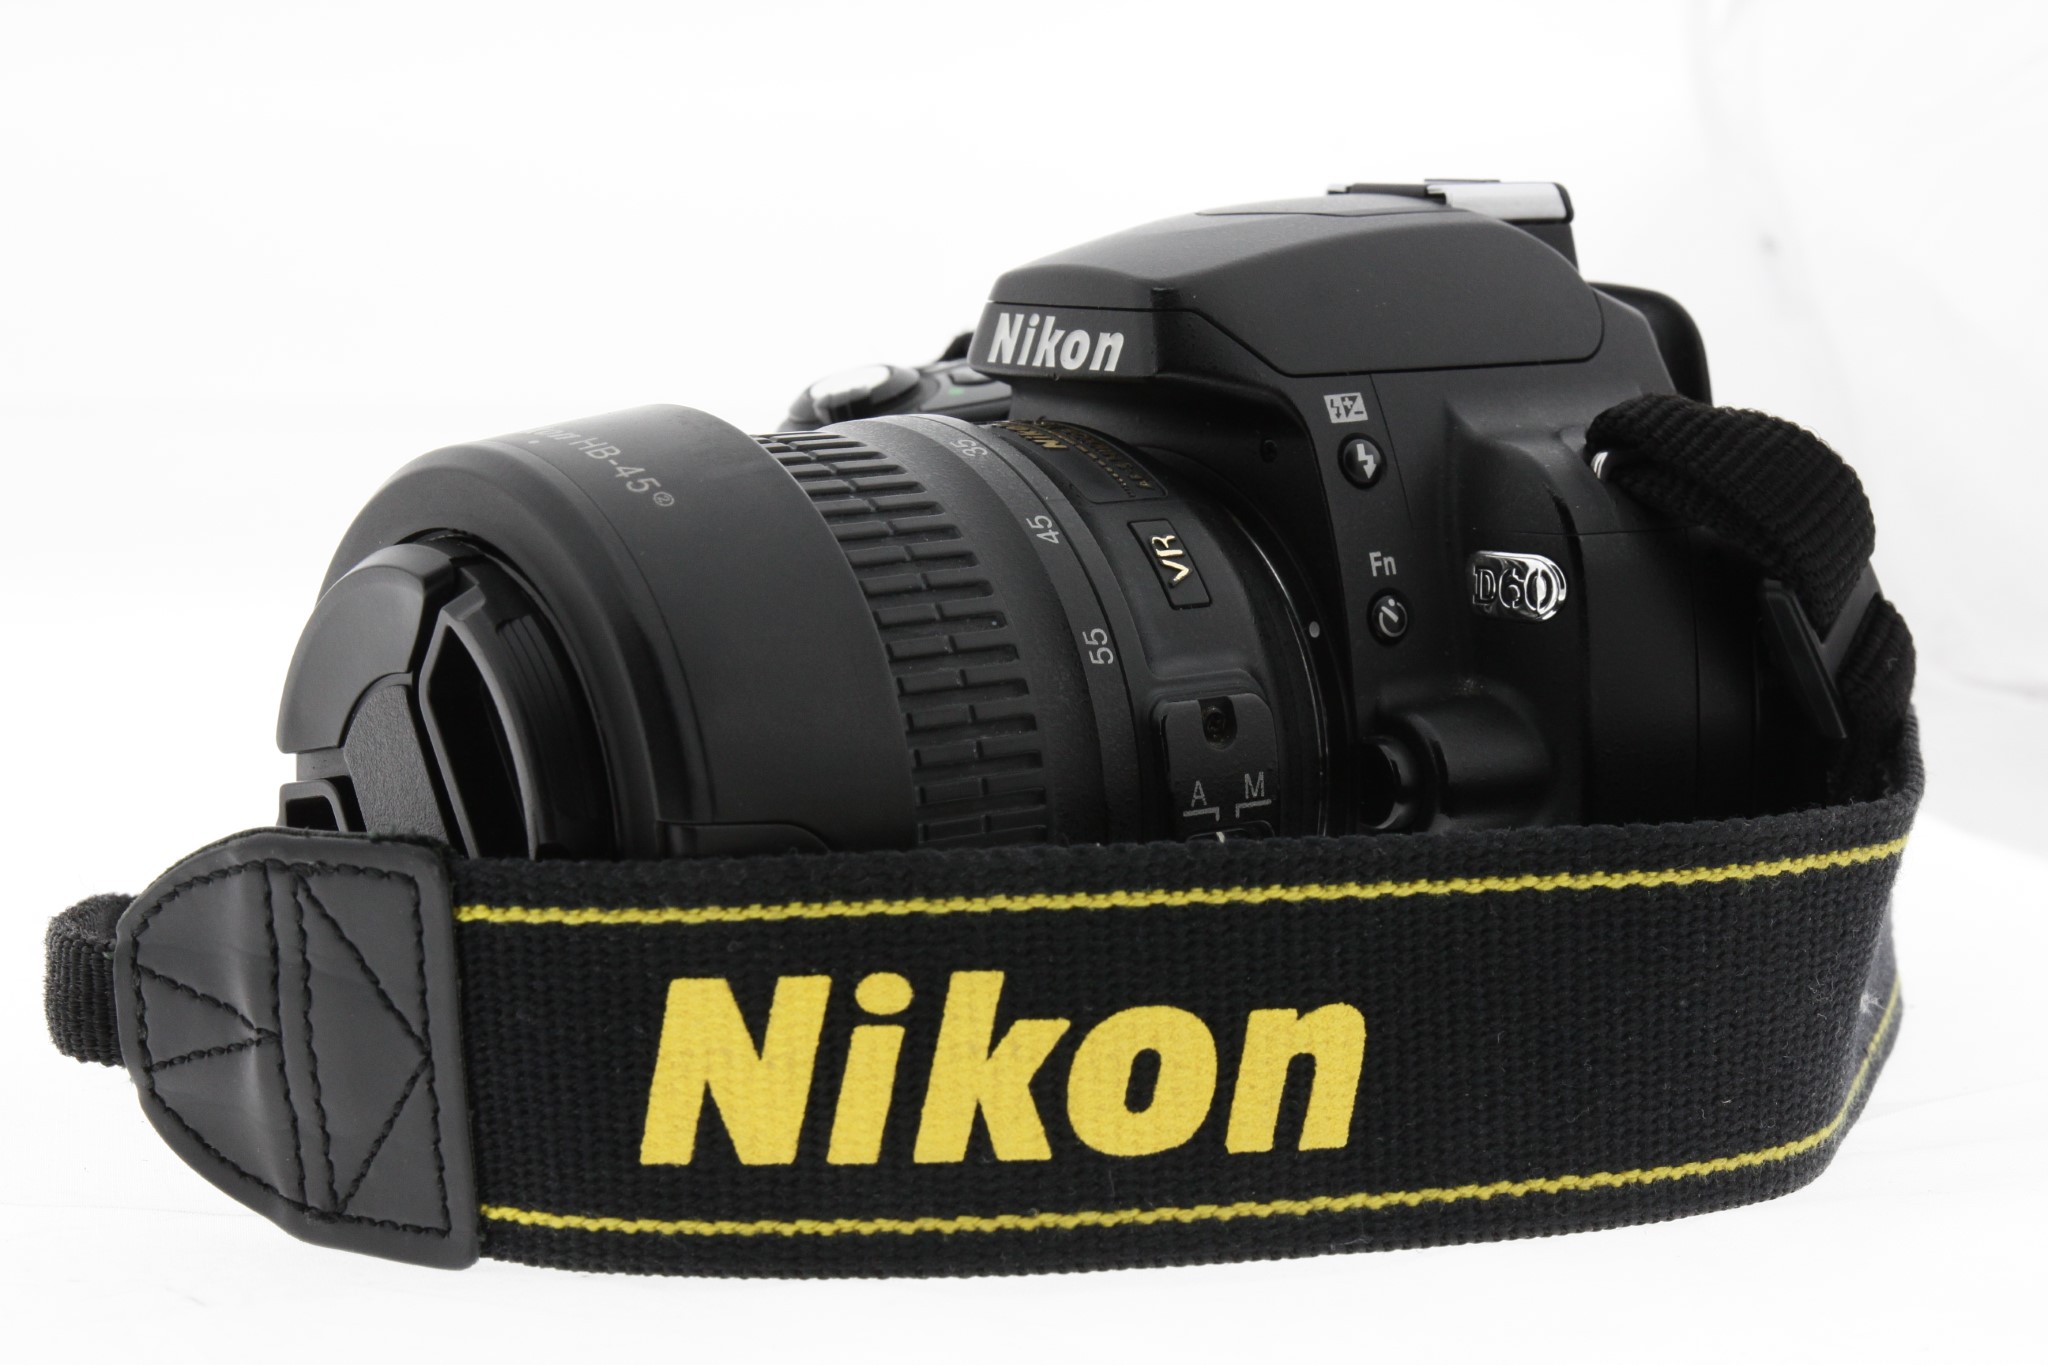 Zrcadlovka Nikon D60 + 18-55mm